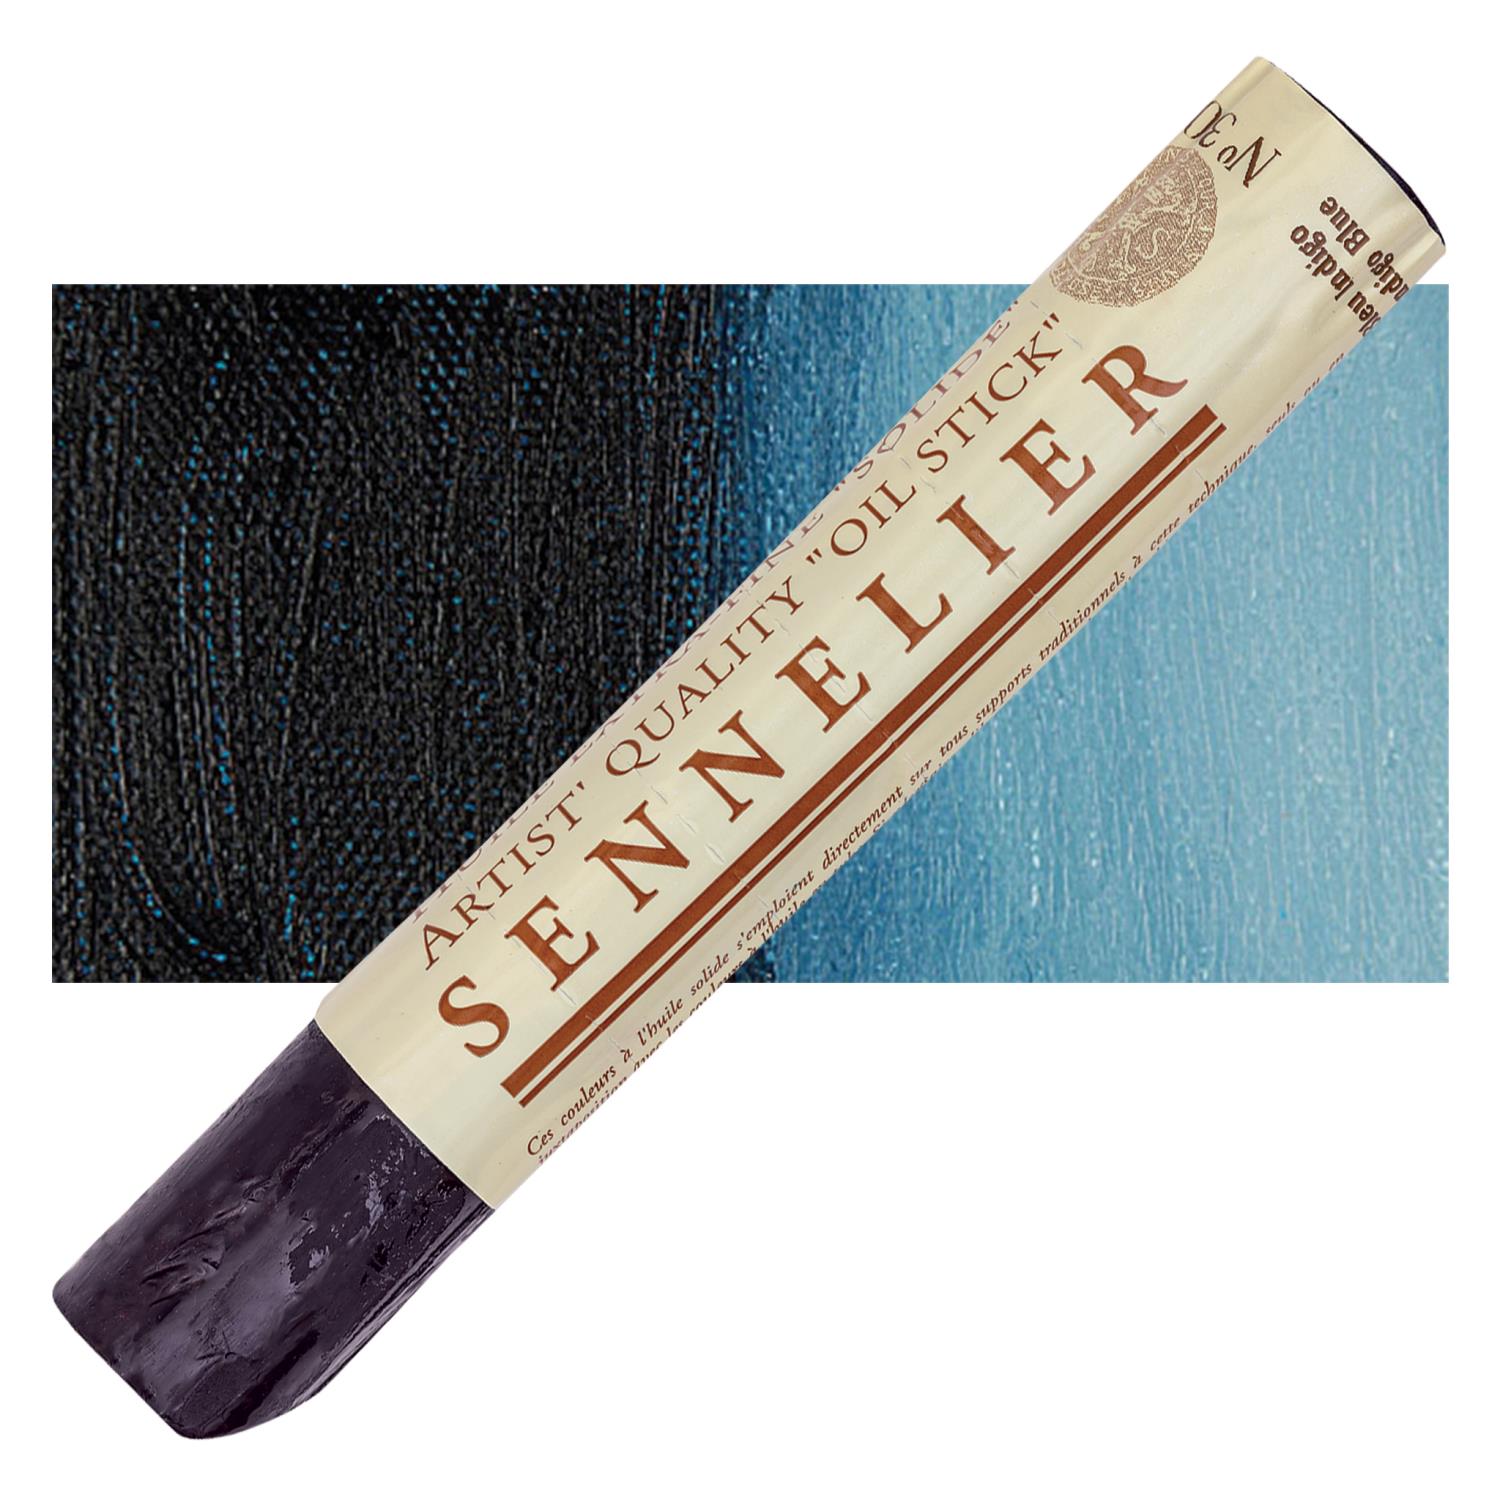 Sennelier Artist Oil Stick 38ml - 308 Indigo Blue S2